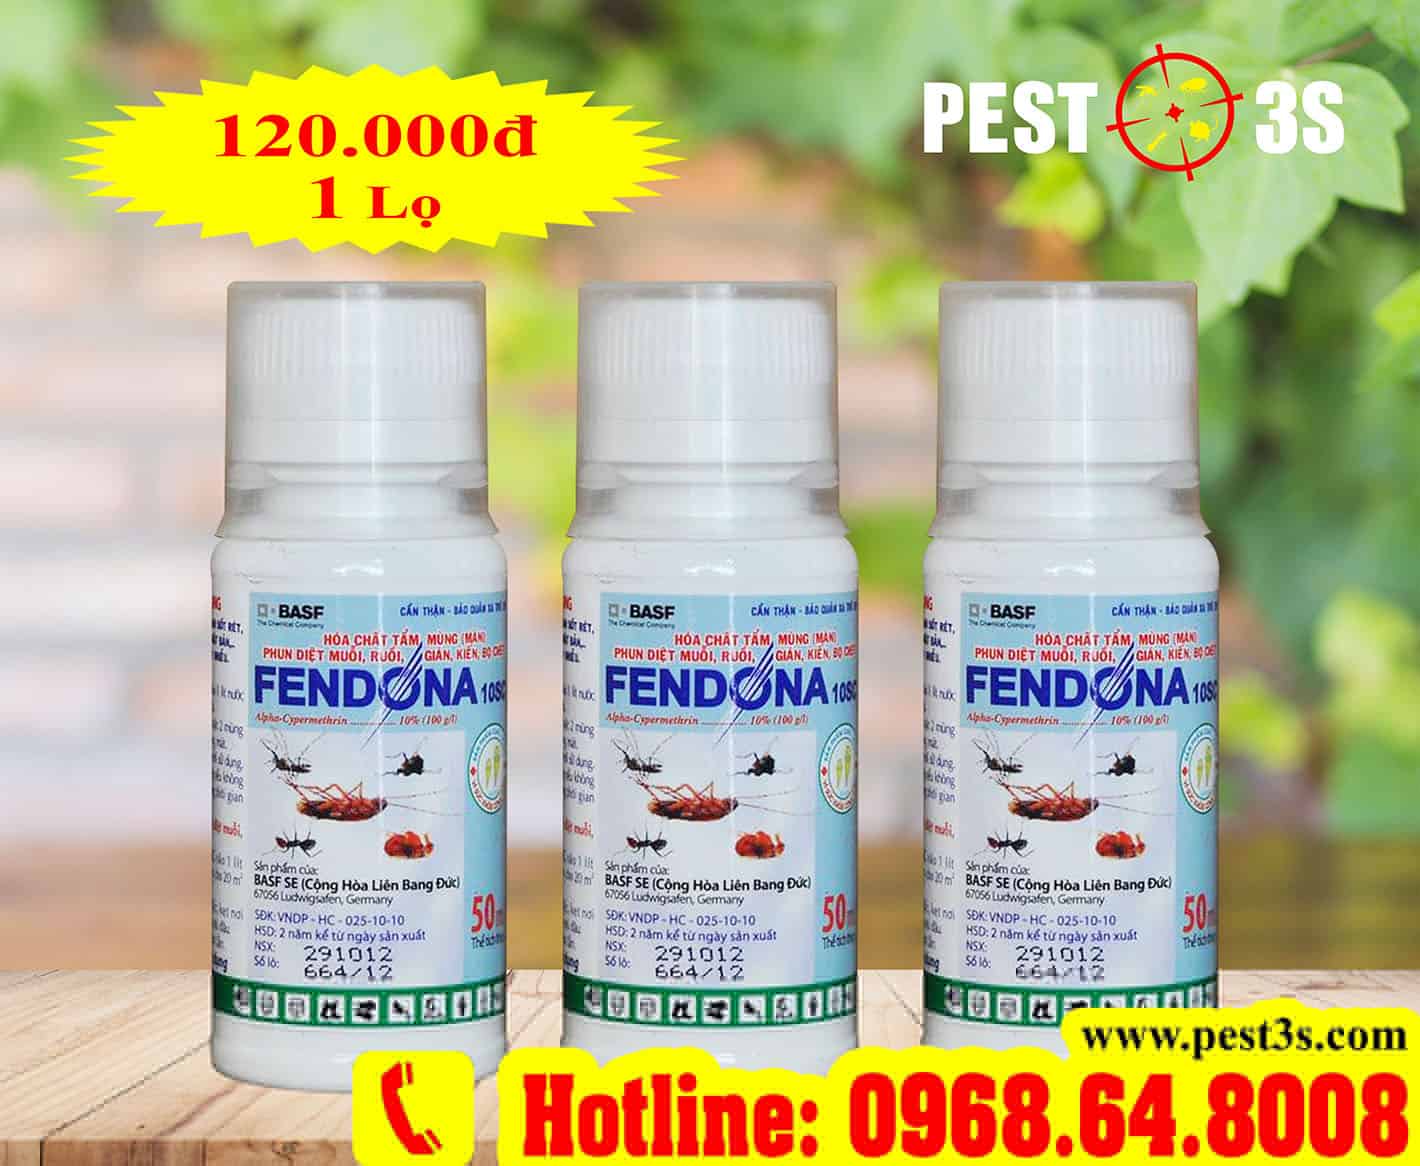 Thuốc diệt côn trùng Fedona 10sc (50ml) - CHLB Đức